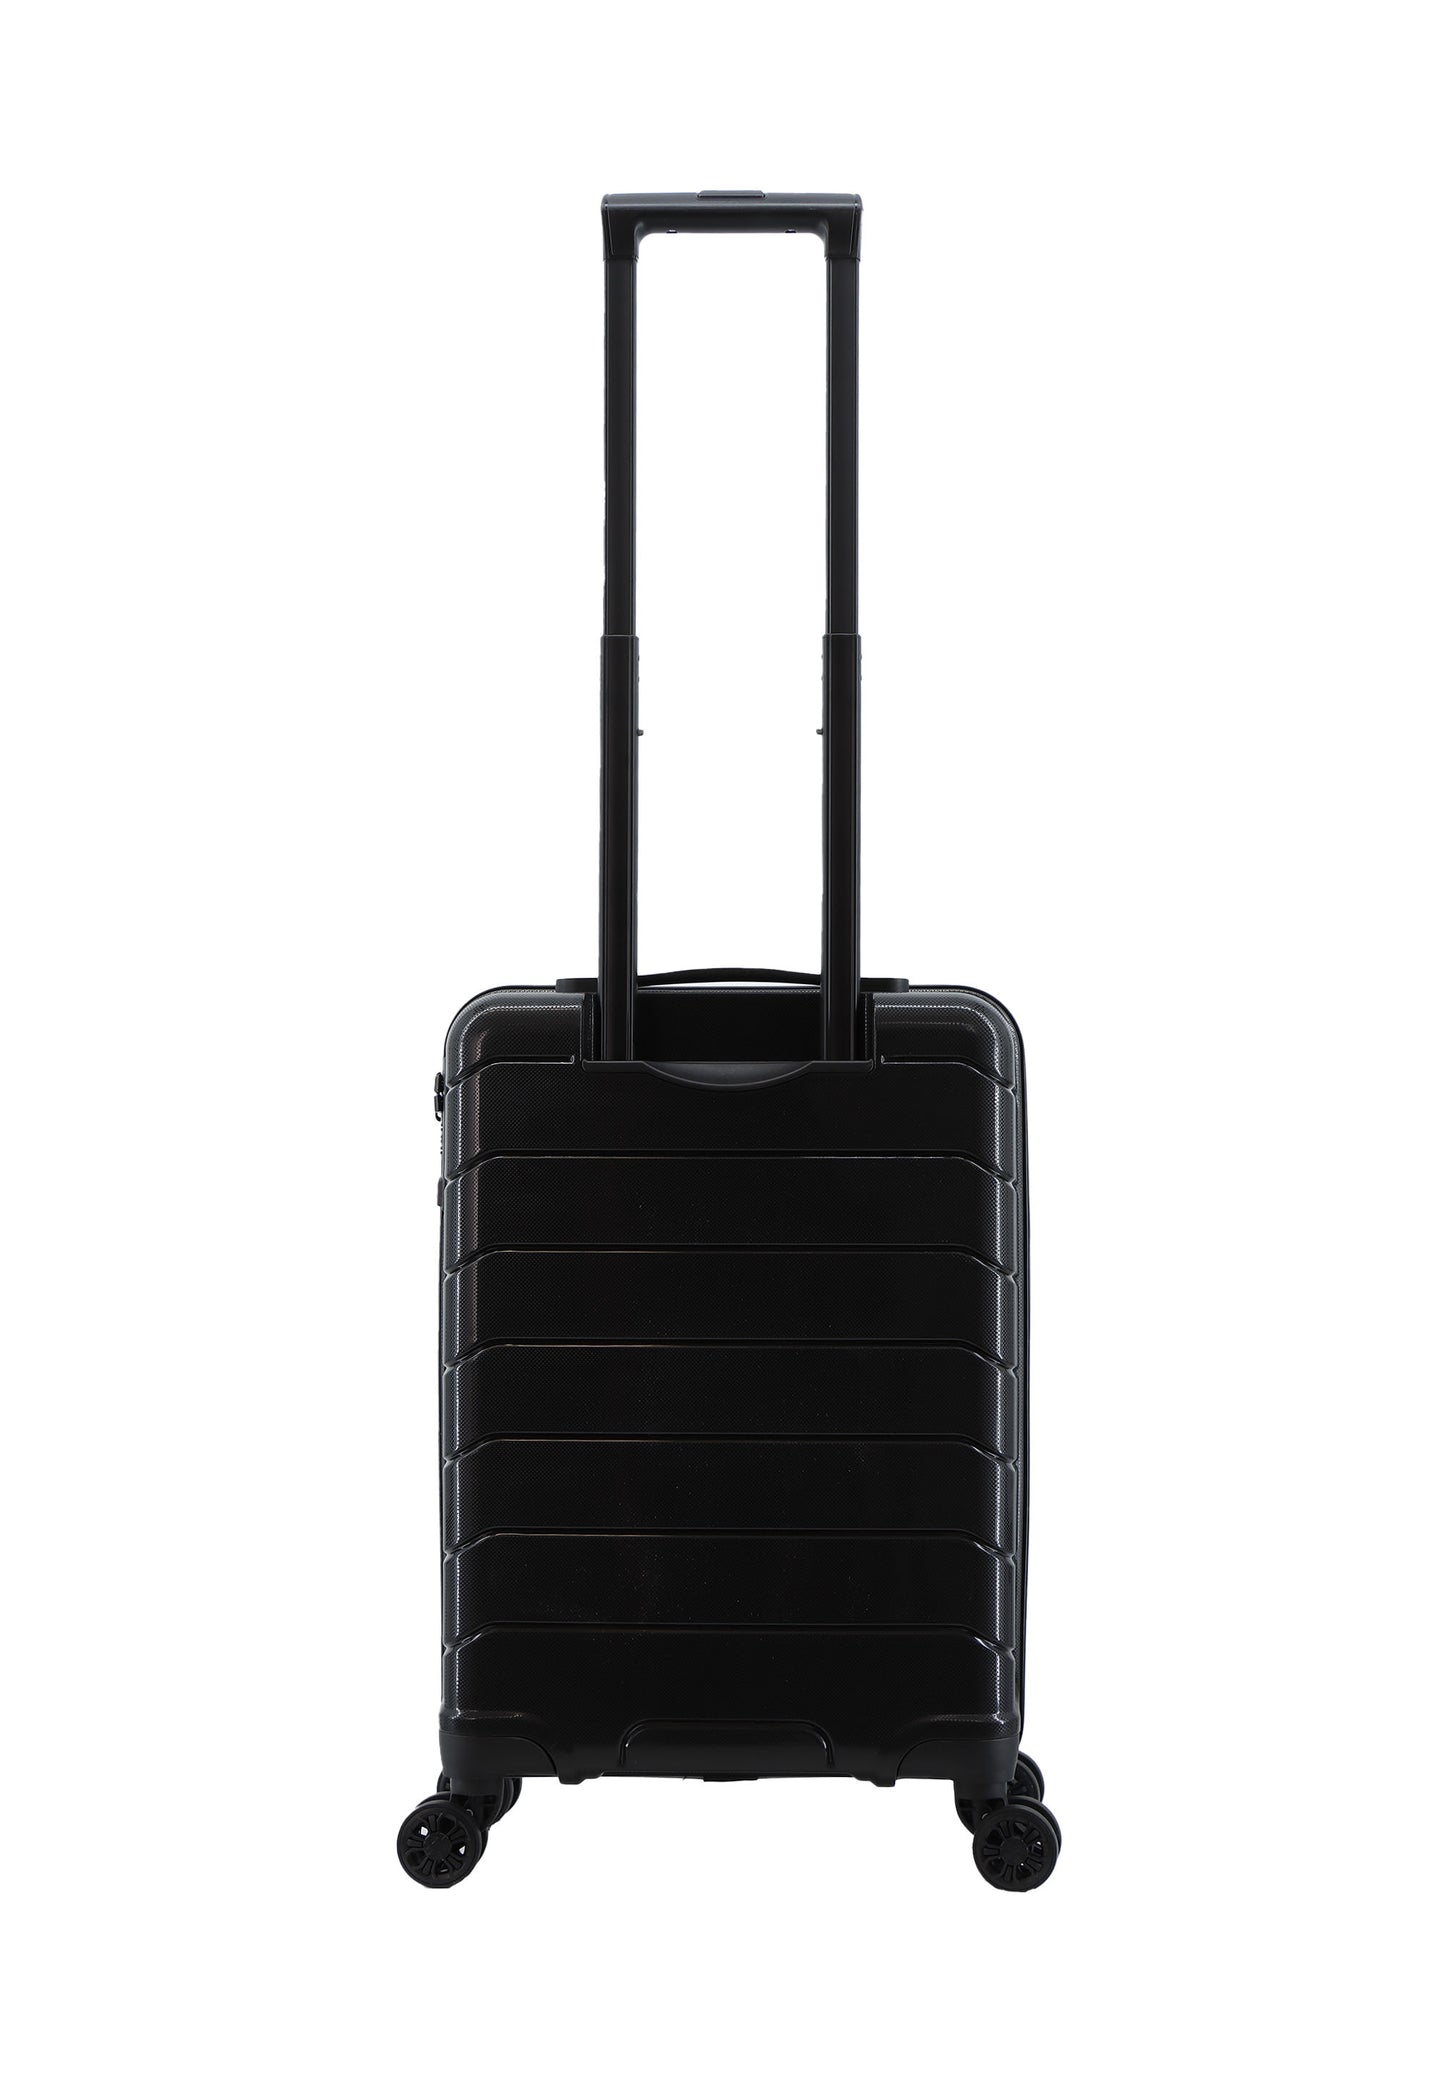 Discovery Skyward Bagage à main Valise rigide / Trolley / Valise de voyage - 55 cm (Petit) - Noir